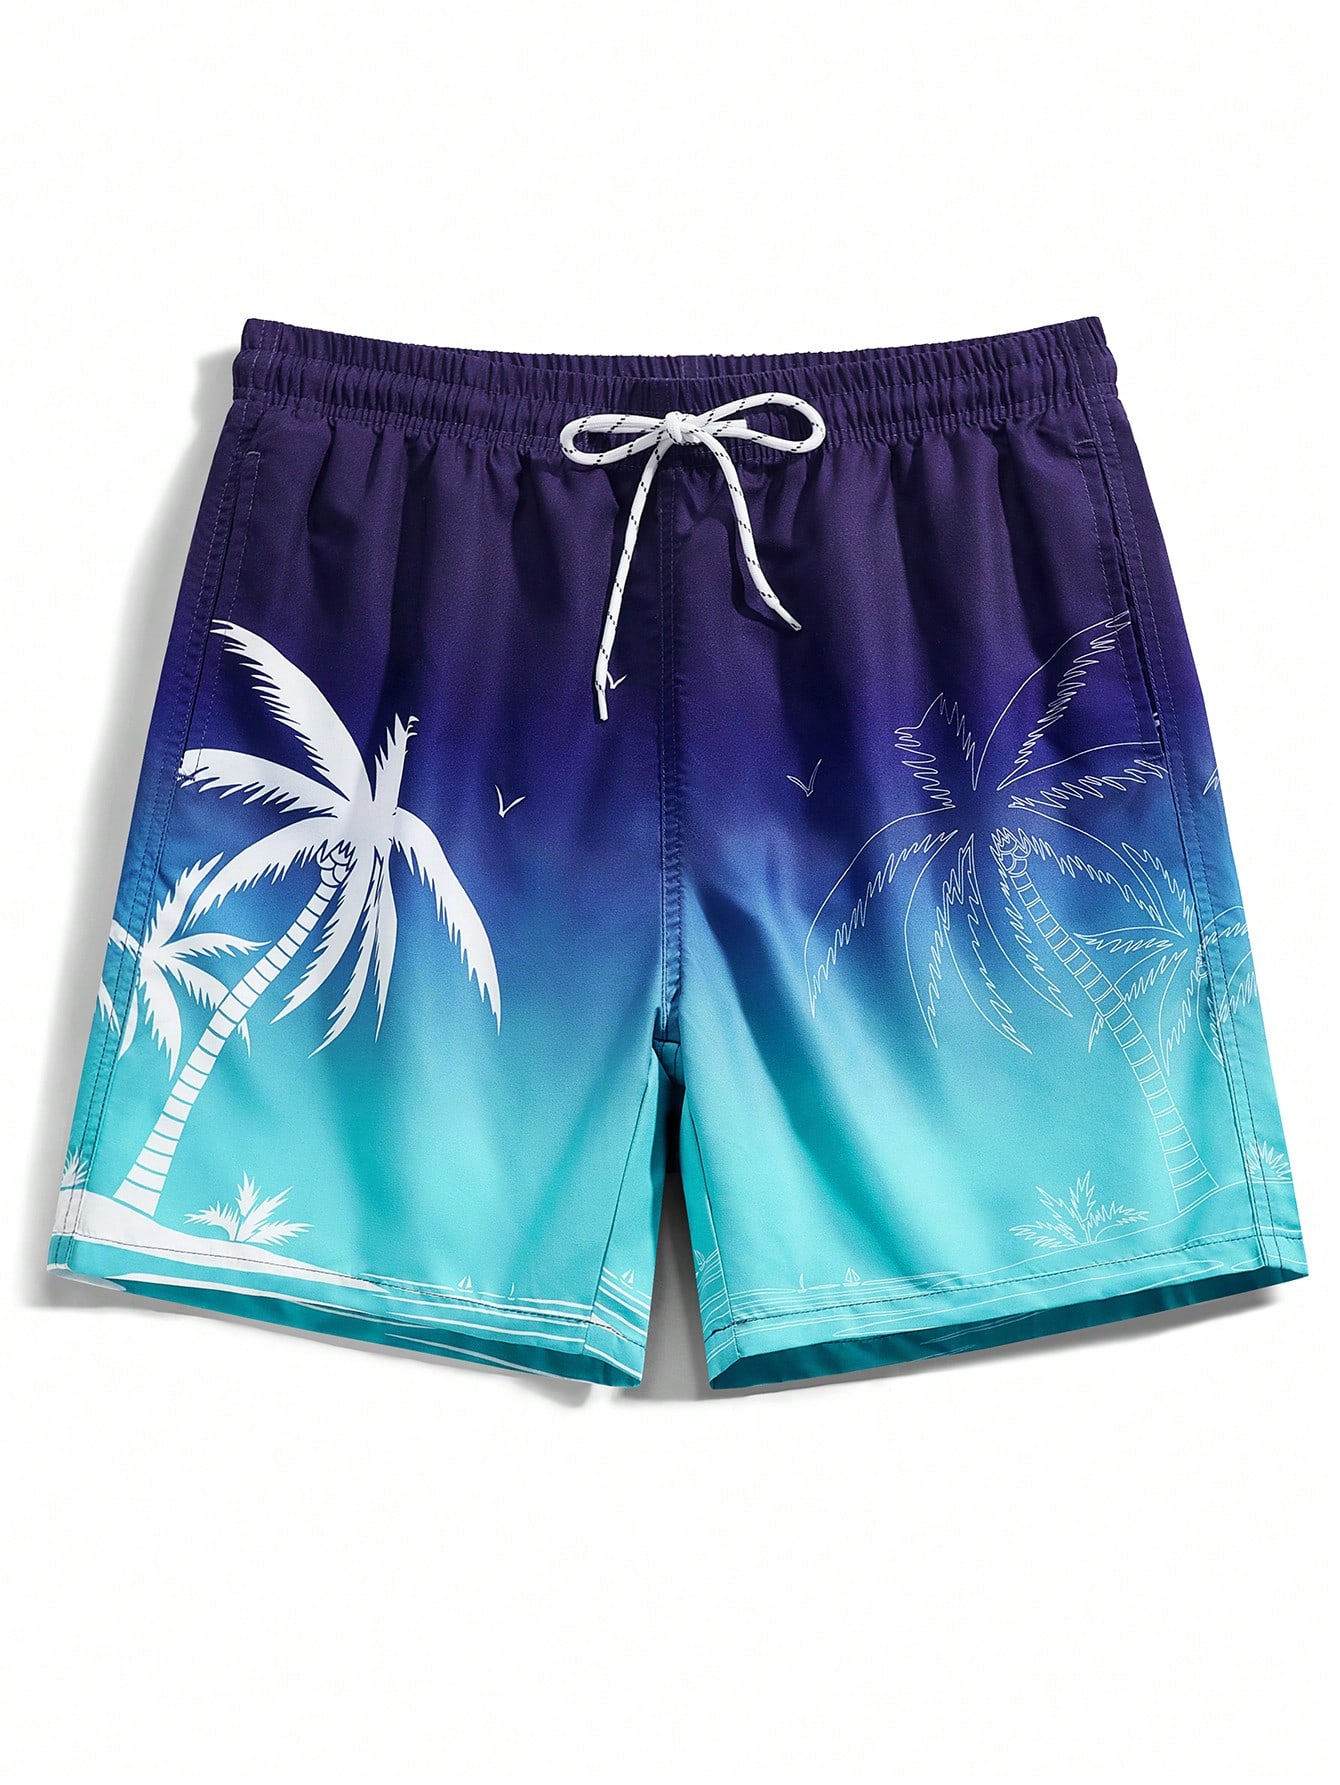 Мужские пляжные шорты с принтом пальм Manfinity, синий серые пляжные шорты summerhit с принтом пальмы